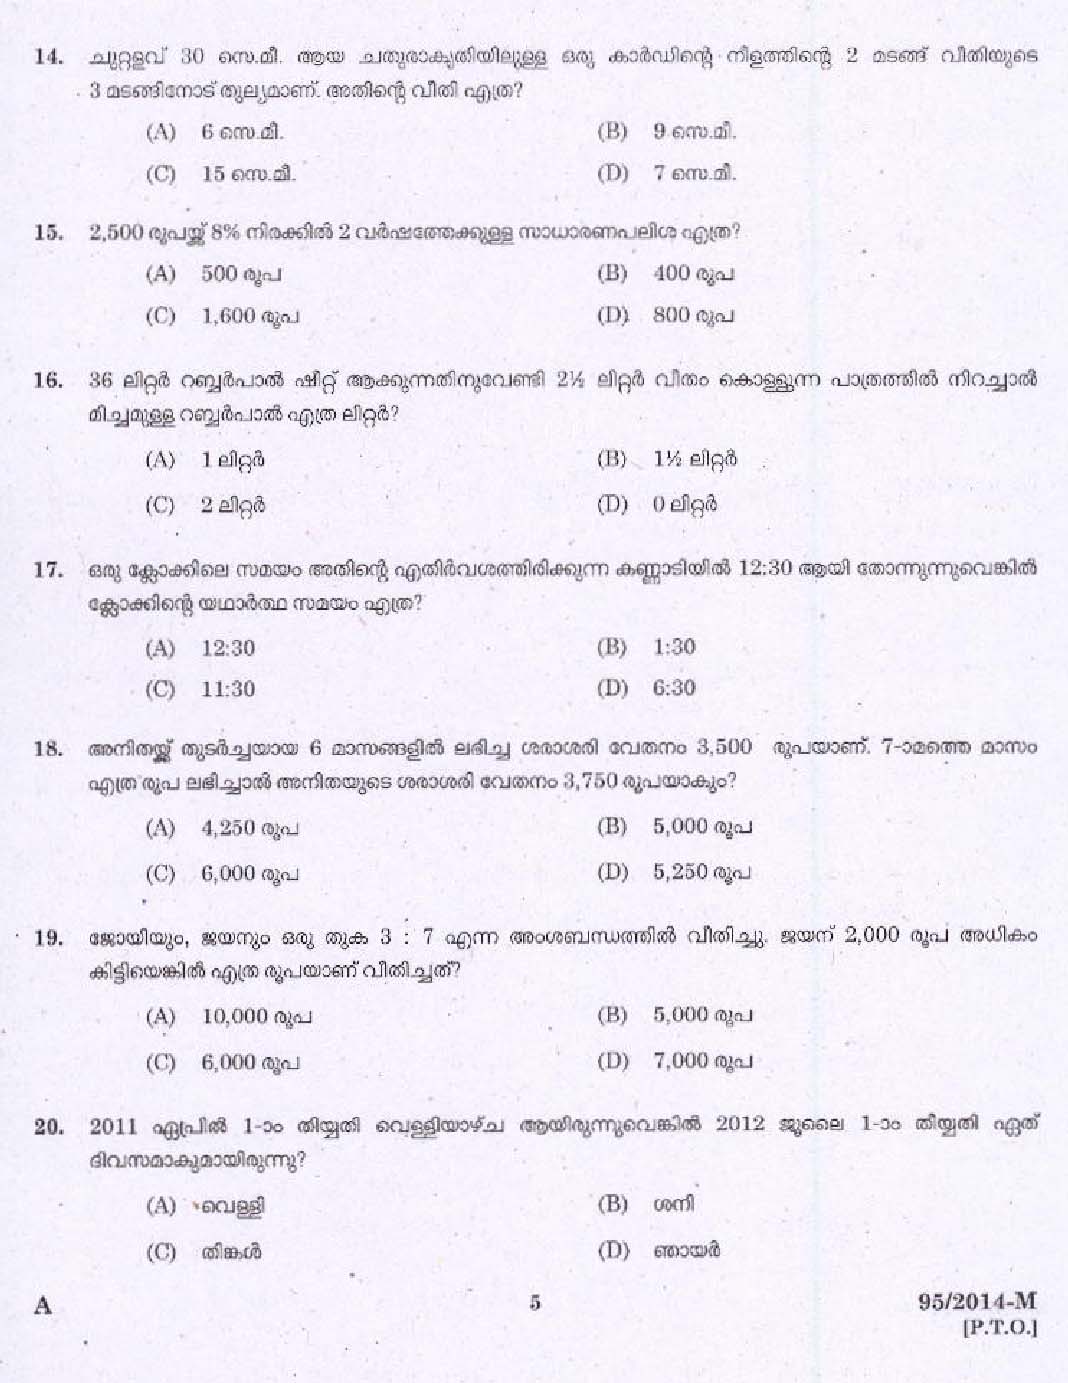 KPSC Village Extension Officer Grade II Exam 2014 Code 952014 M 3